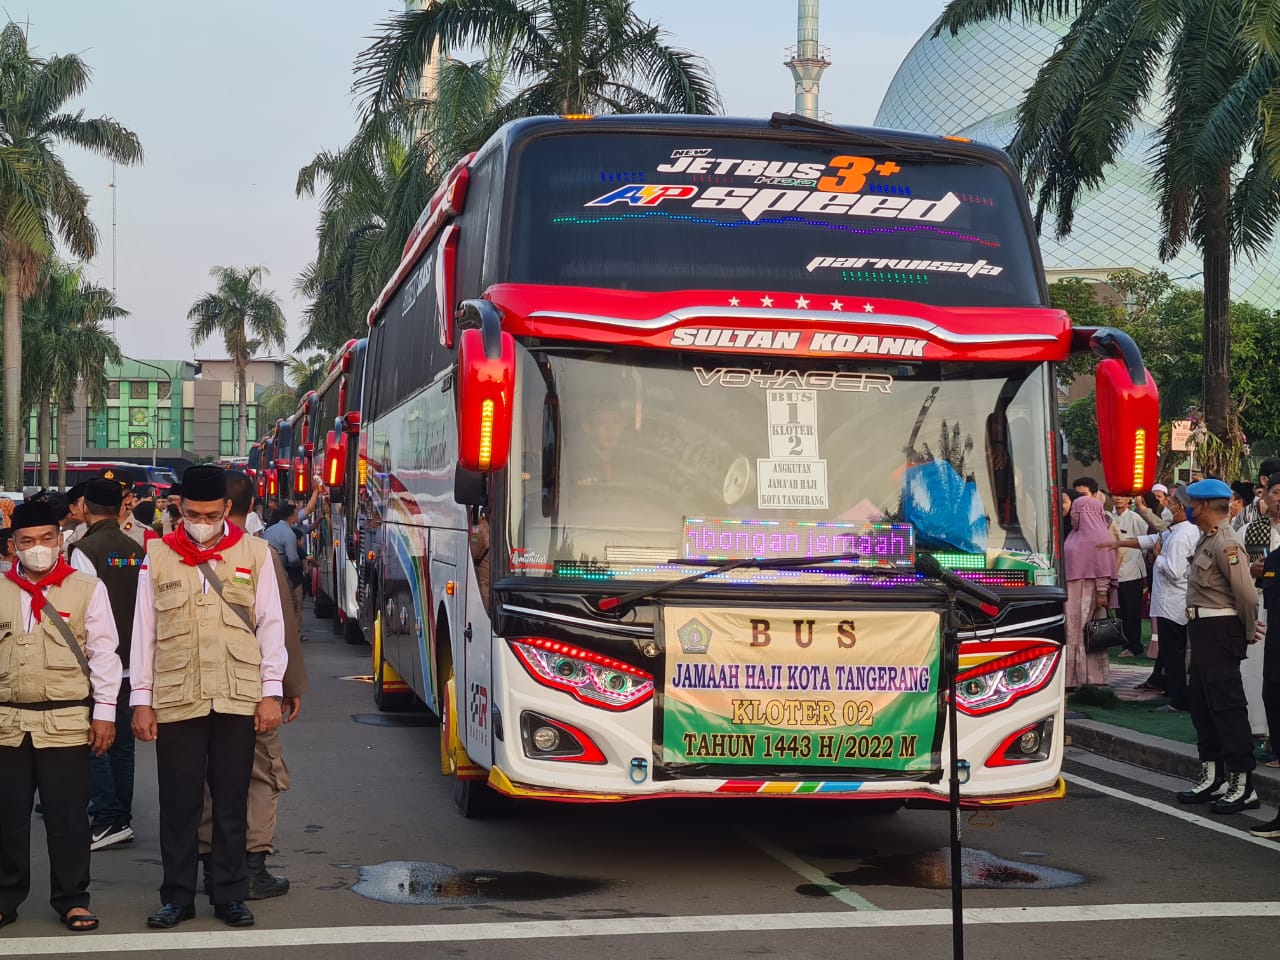 Wali Kota Tangerang Berharap Asrama Haji Banten di Kota Tangerang Segera Dibangun